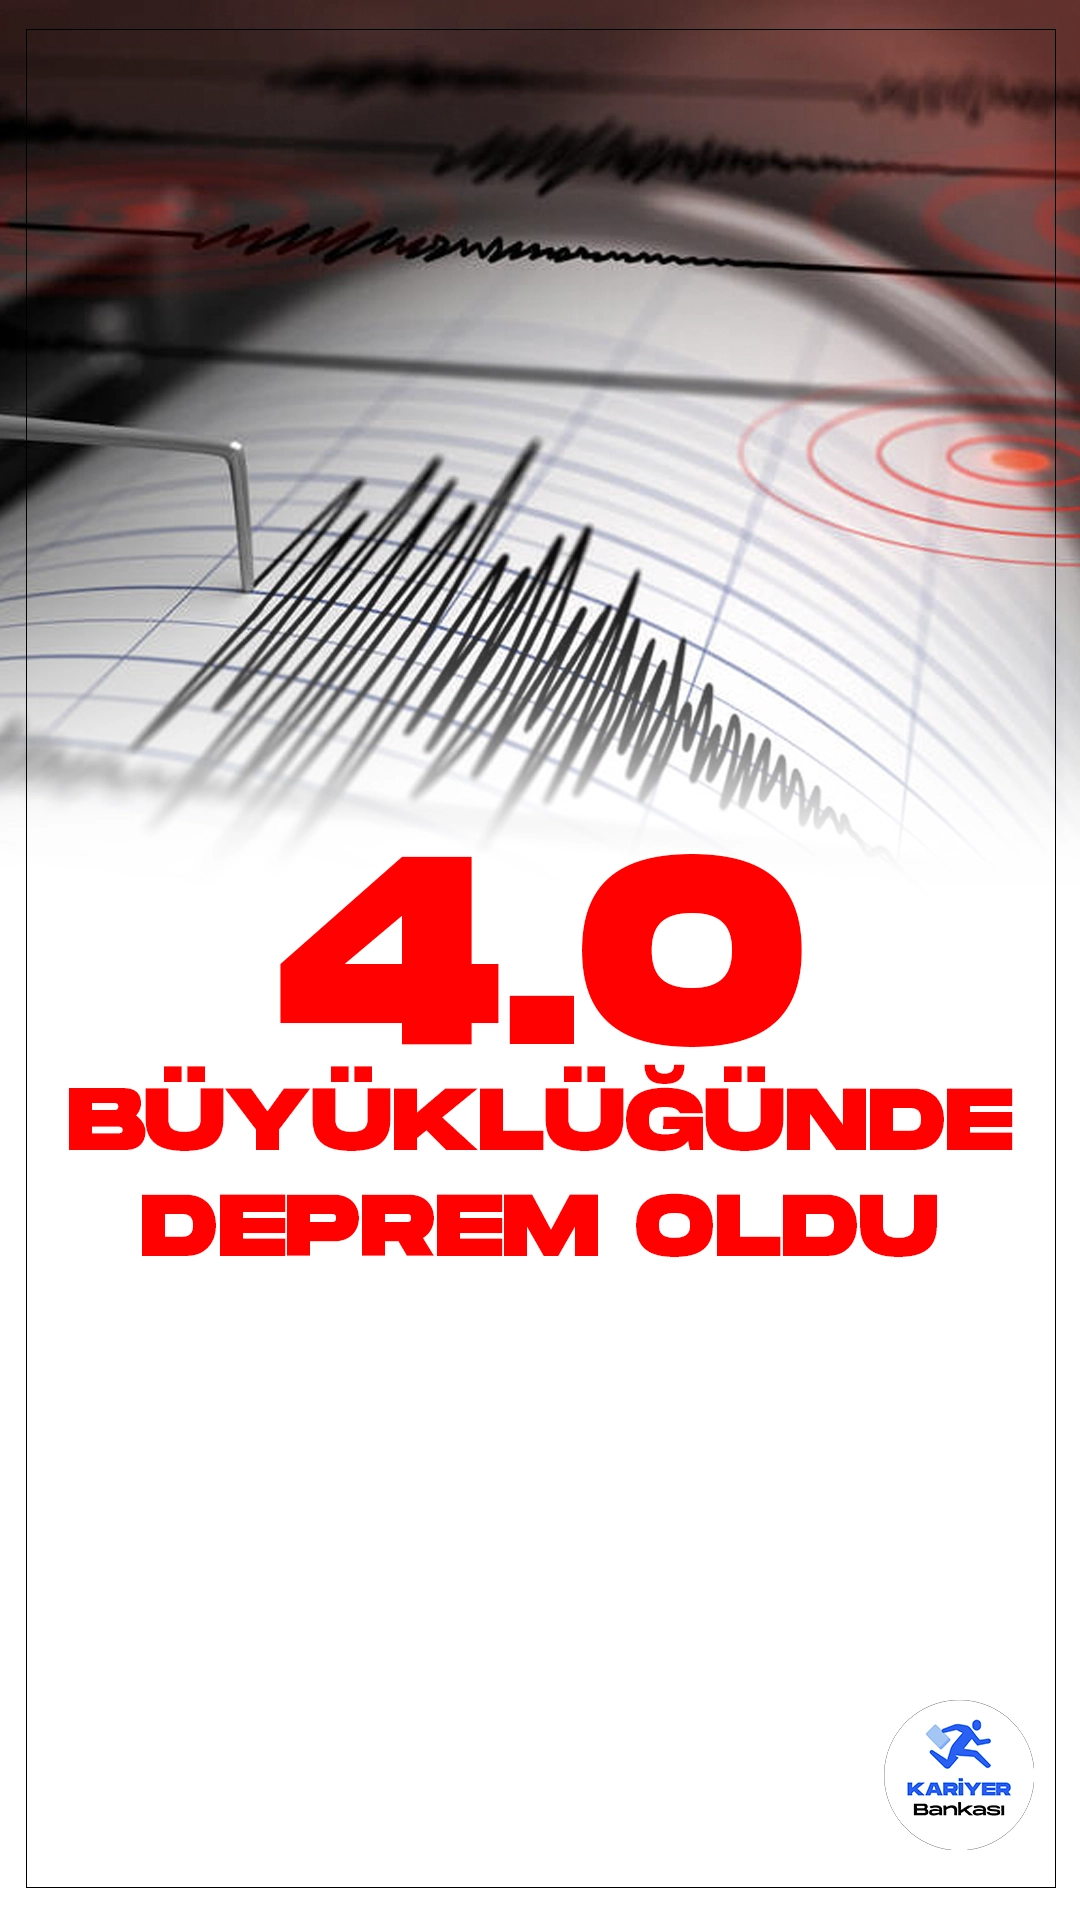 Muğla'da 4.0 Büyüklüğünde Deprem Oldu. İçişleri Bakanlığı Afet ve Acil Durum Yönetimi Başkanlığı (AFAD) Deprem Dairesi tarafından yayımlanan son dakika duyurusunda göre, Muğla'nın Fethiye ilçesinde 4.0 büyüklüğünde deprem meydana geldi.